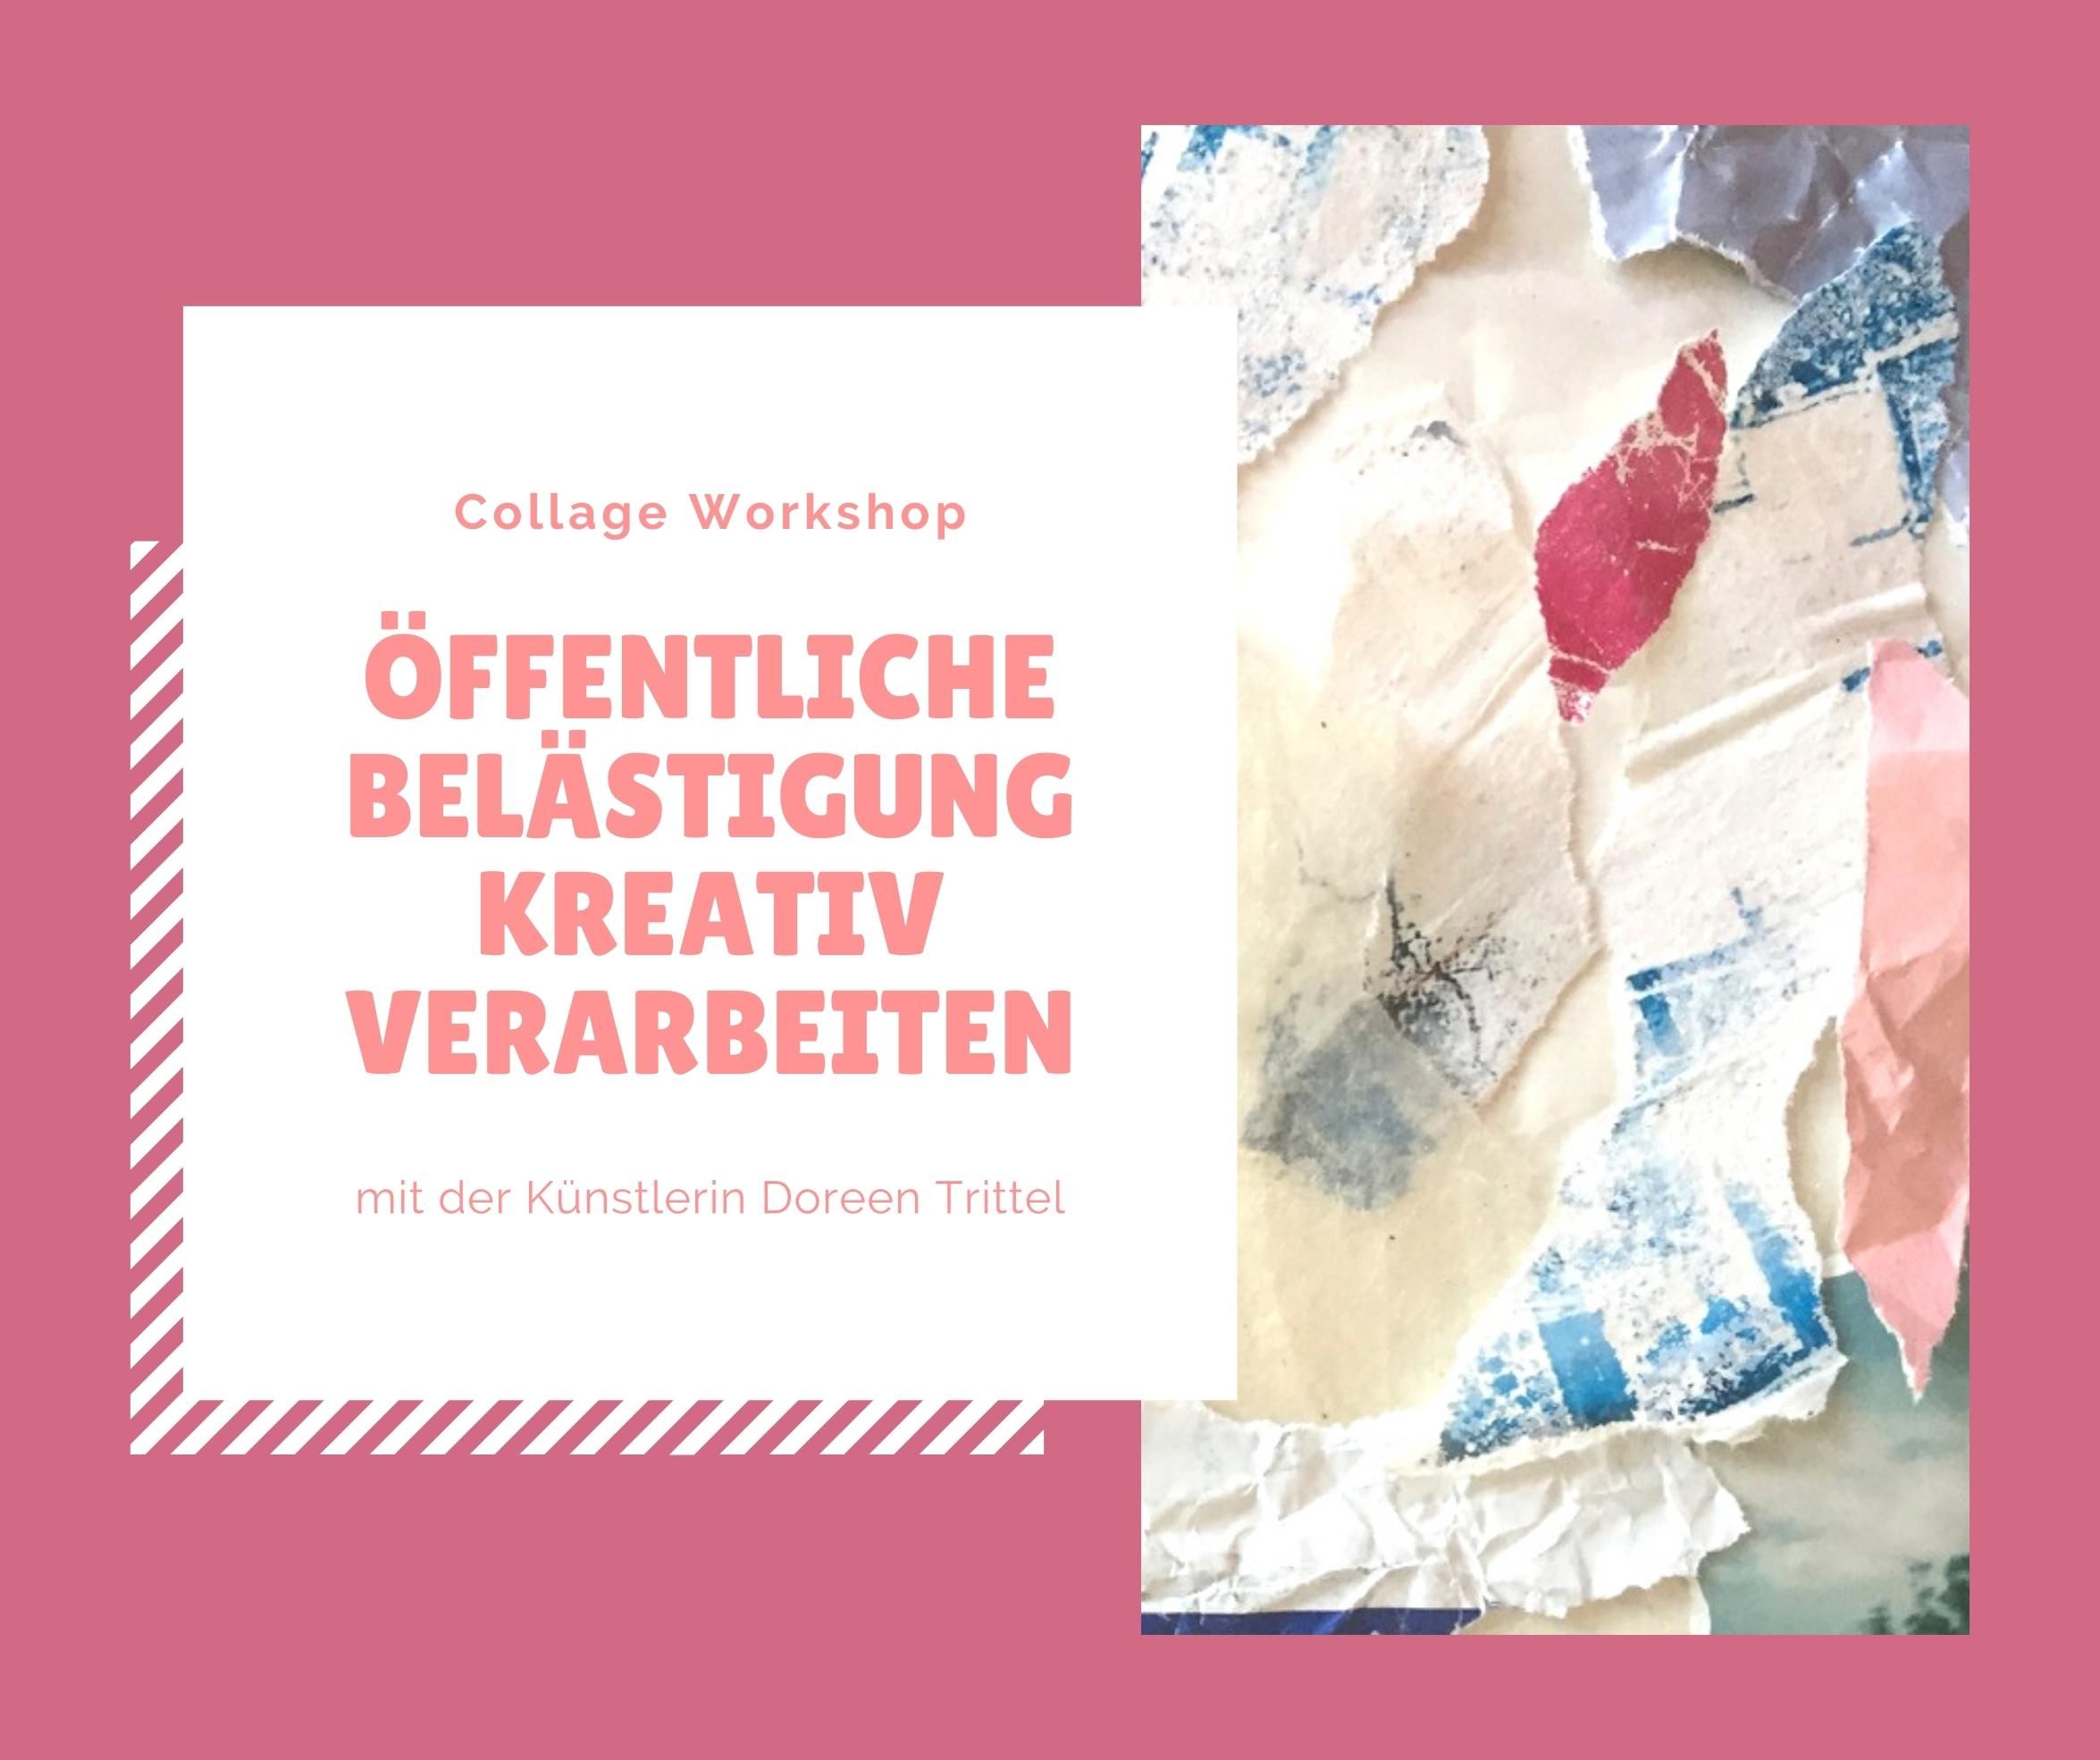 Collage Workshop - Öffentliche Belästigung kreativ verarbeiten, Bild: Doreen Trittel